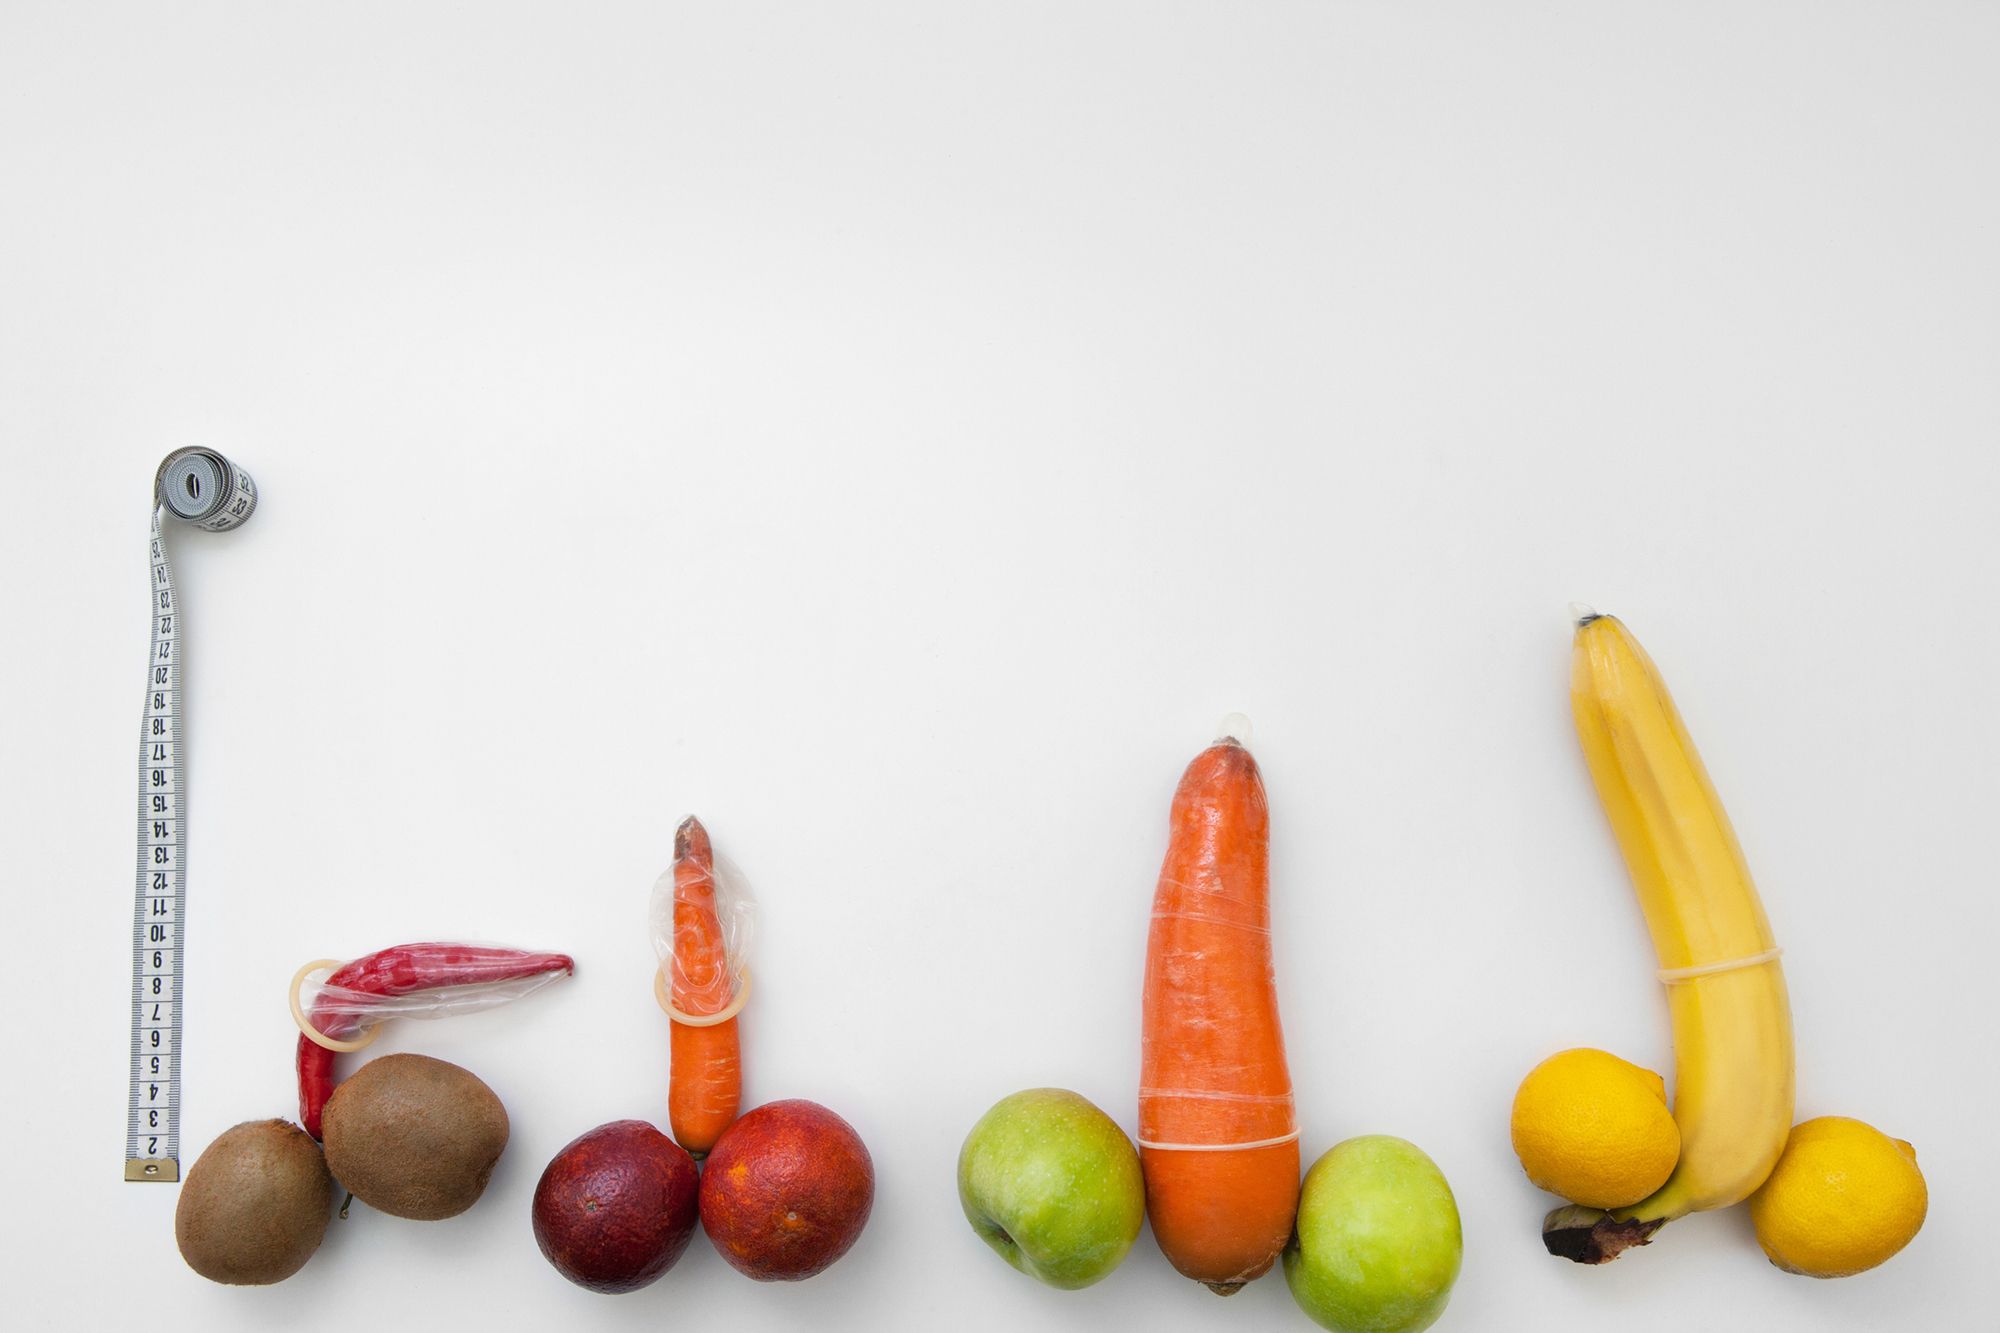 Obst und Gemüse in Penisform mit übergezogenen Kondomen neben Maßband